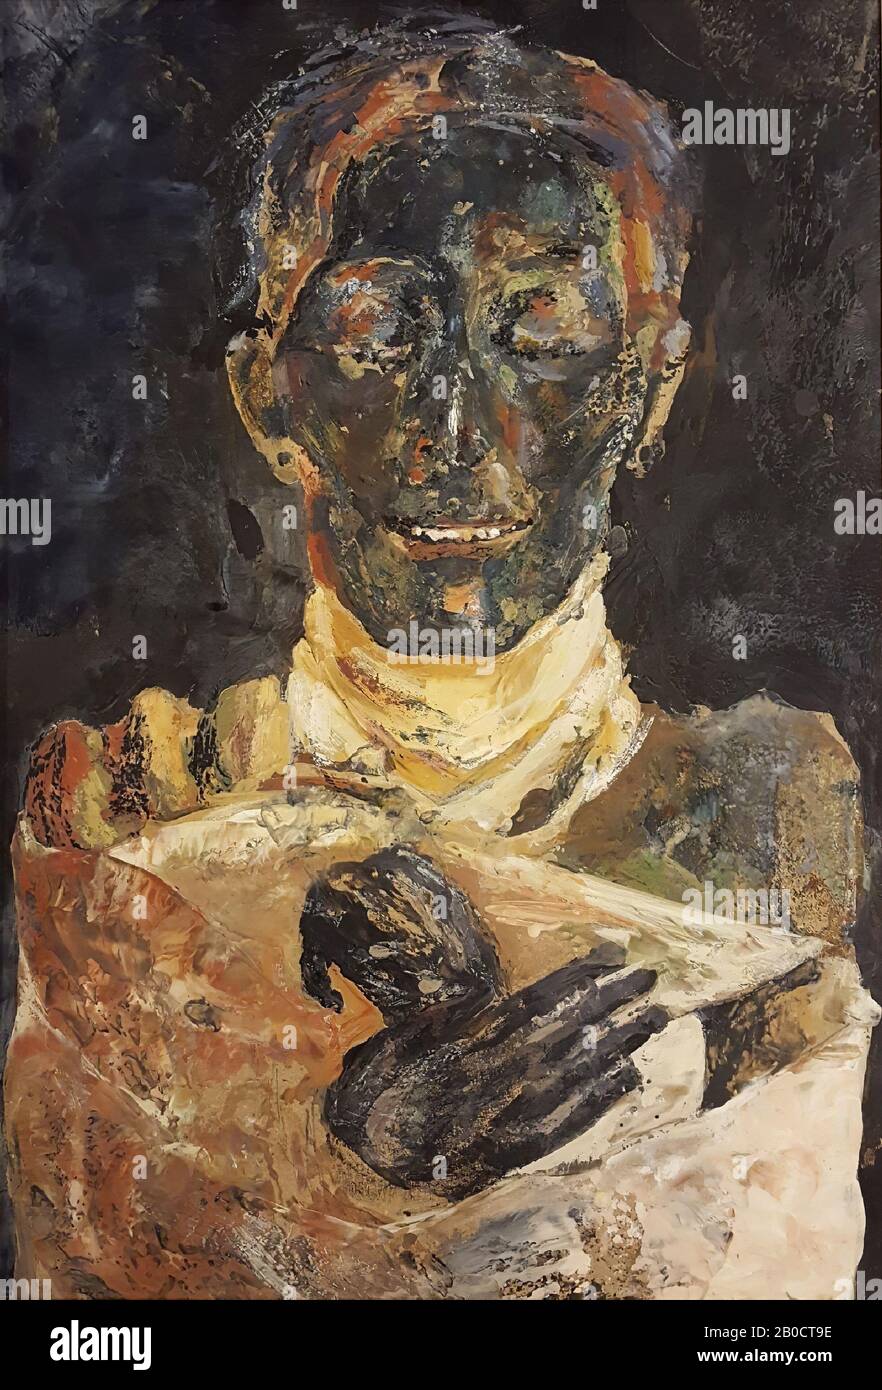 Thutmosis IV, Pintura del artista Riky Schellart-van Deursen (1942-2013), formato retrato, que representa la momia del rey de Thutmosis IV en el Museo Egipcio de el Cairo (CG 61073). La momia se muestra acostada y boca abajo. Se representa la parte superior del cuerpo bajo una cubierta predominantemente blanca con la cabeza y las manos descubiertas, la última pintada en tonos oscuros, sobre un fondo oscuro., pintada en encaustic sobre panel de tablero duro, enmarcada en marco de madera en blanco. Marcado en la espalda con lápiz y bolígrafo: Riky Schellart-vDeursen Foto de stock